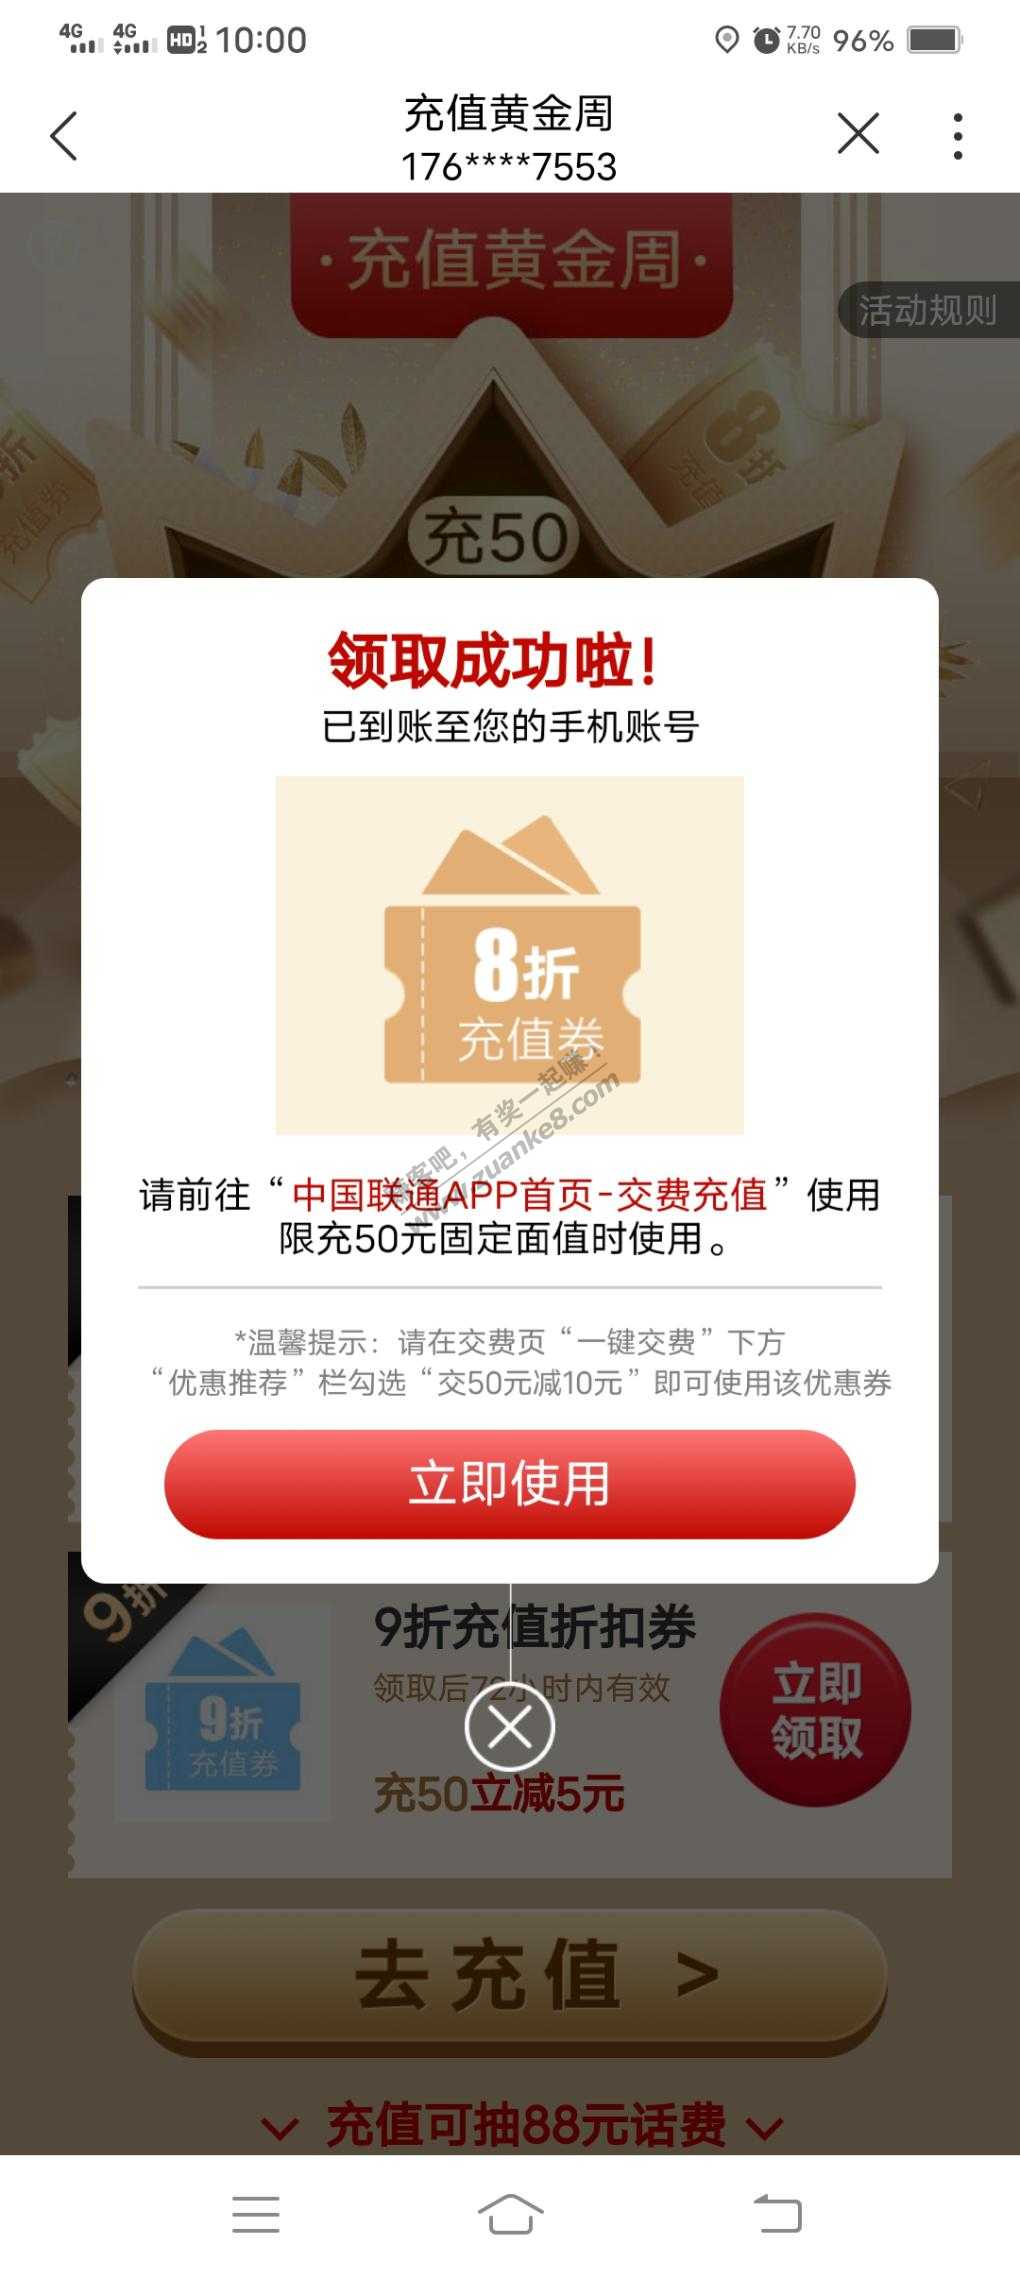 中国联通  10点50-10-惠小助(52huixz.com)